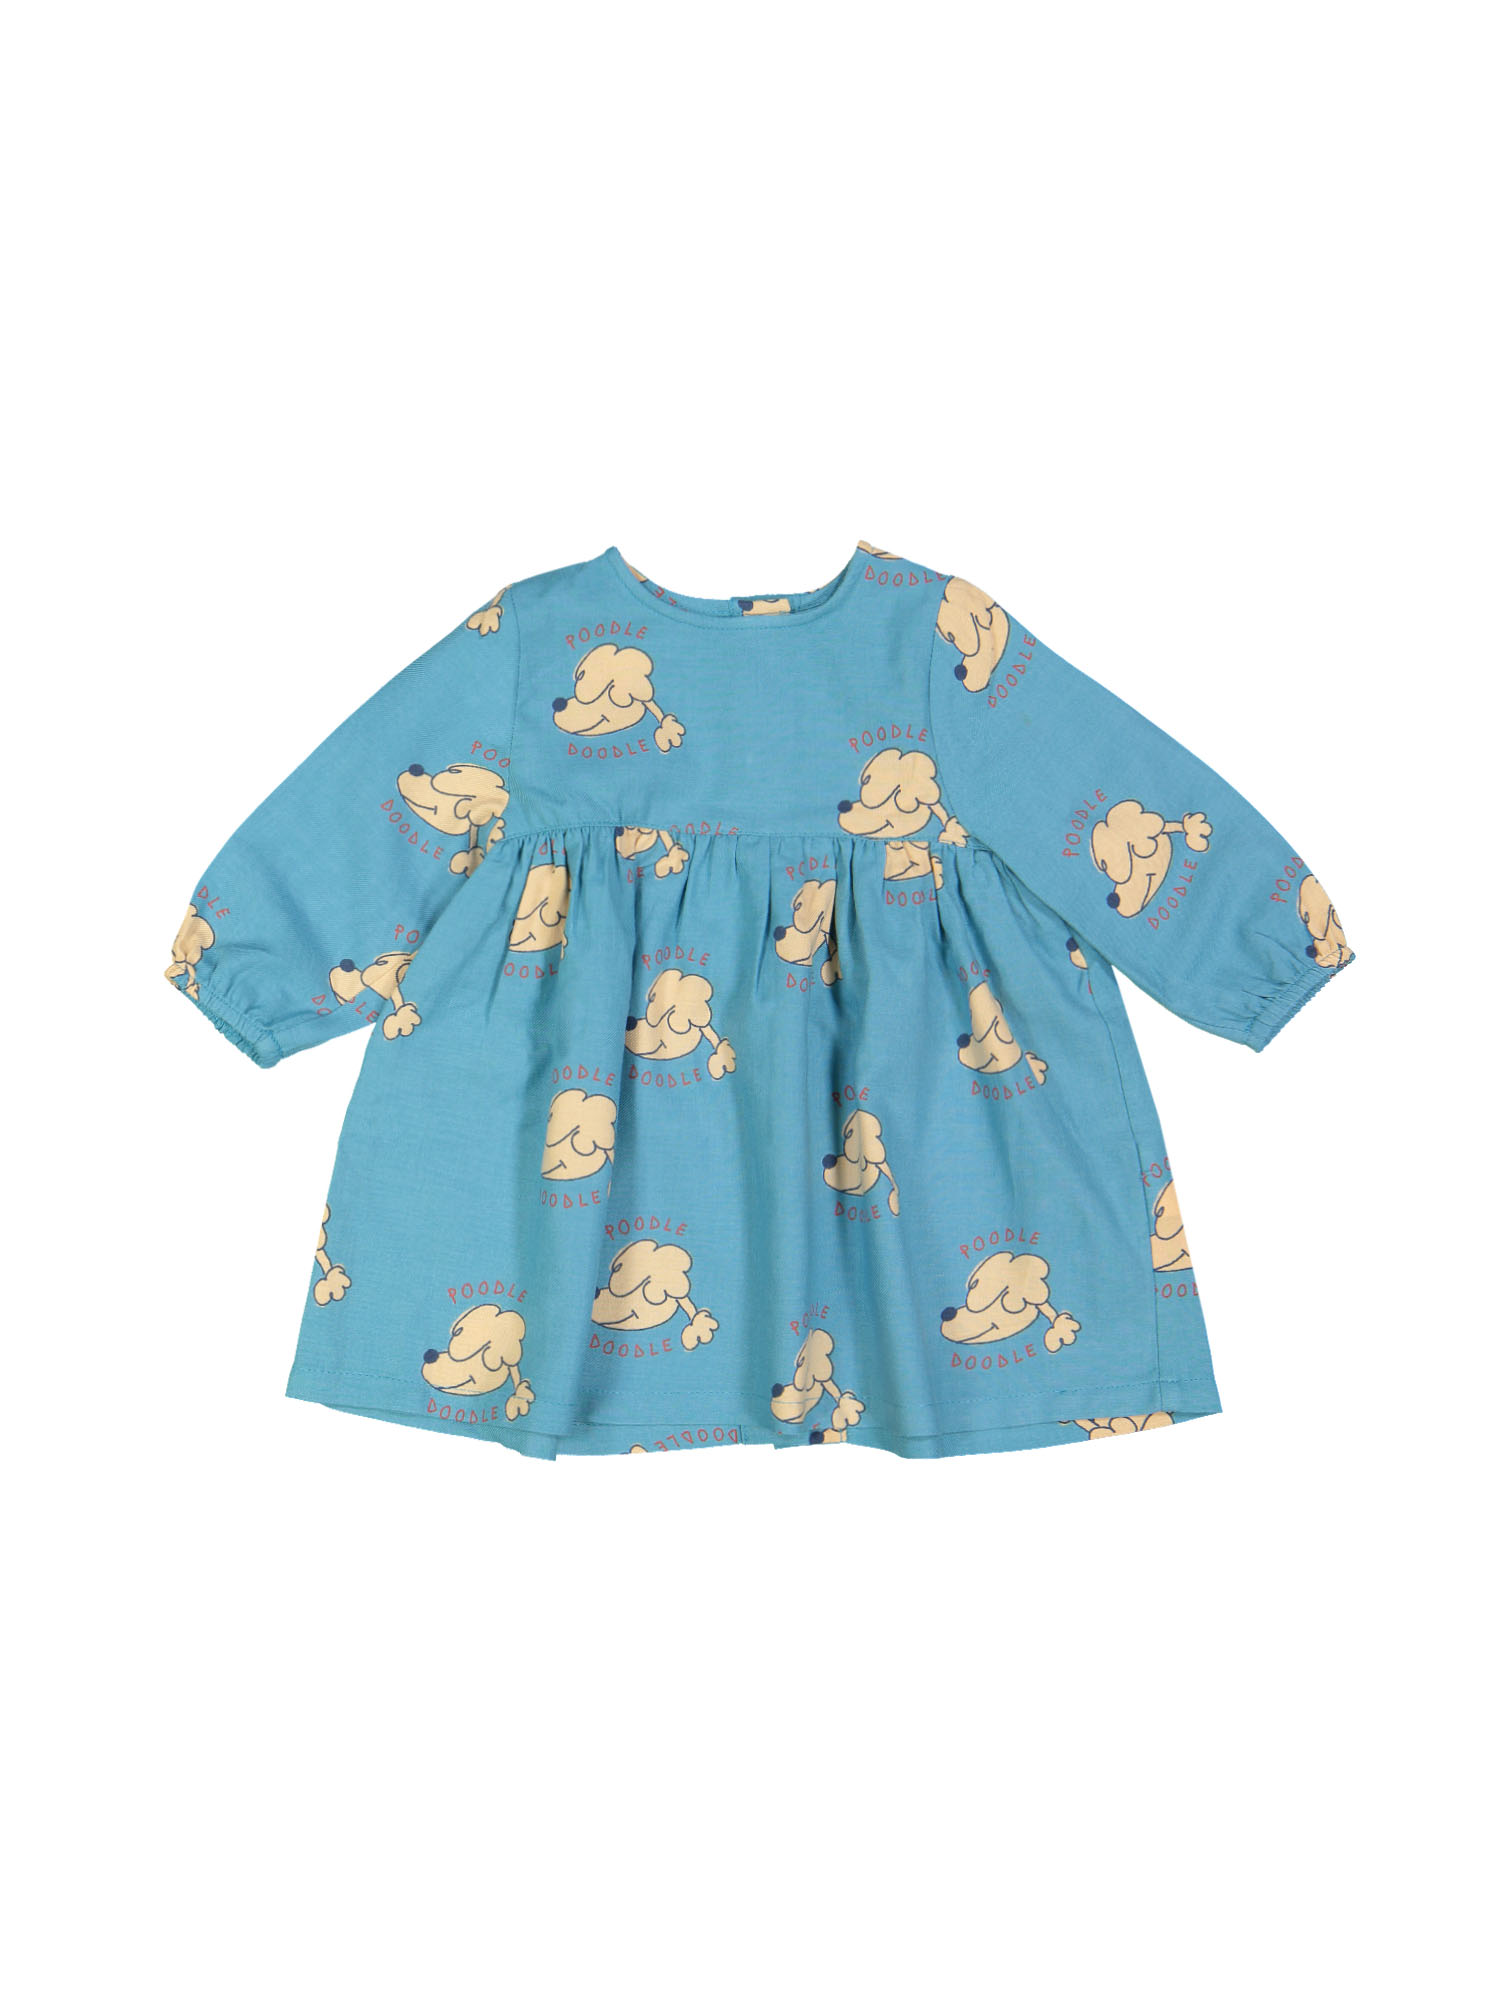 jurk mini poodle doodle blauw 06m